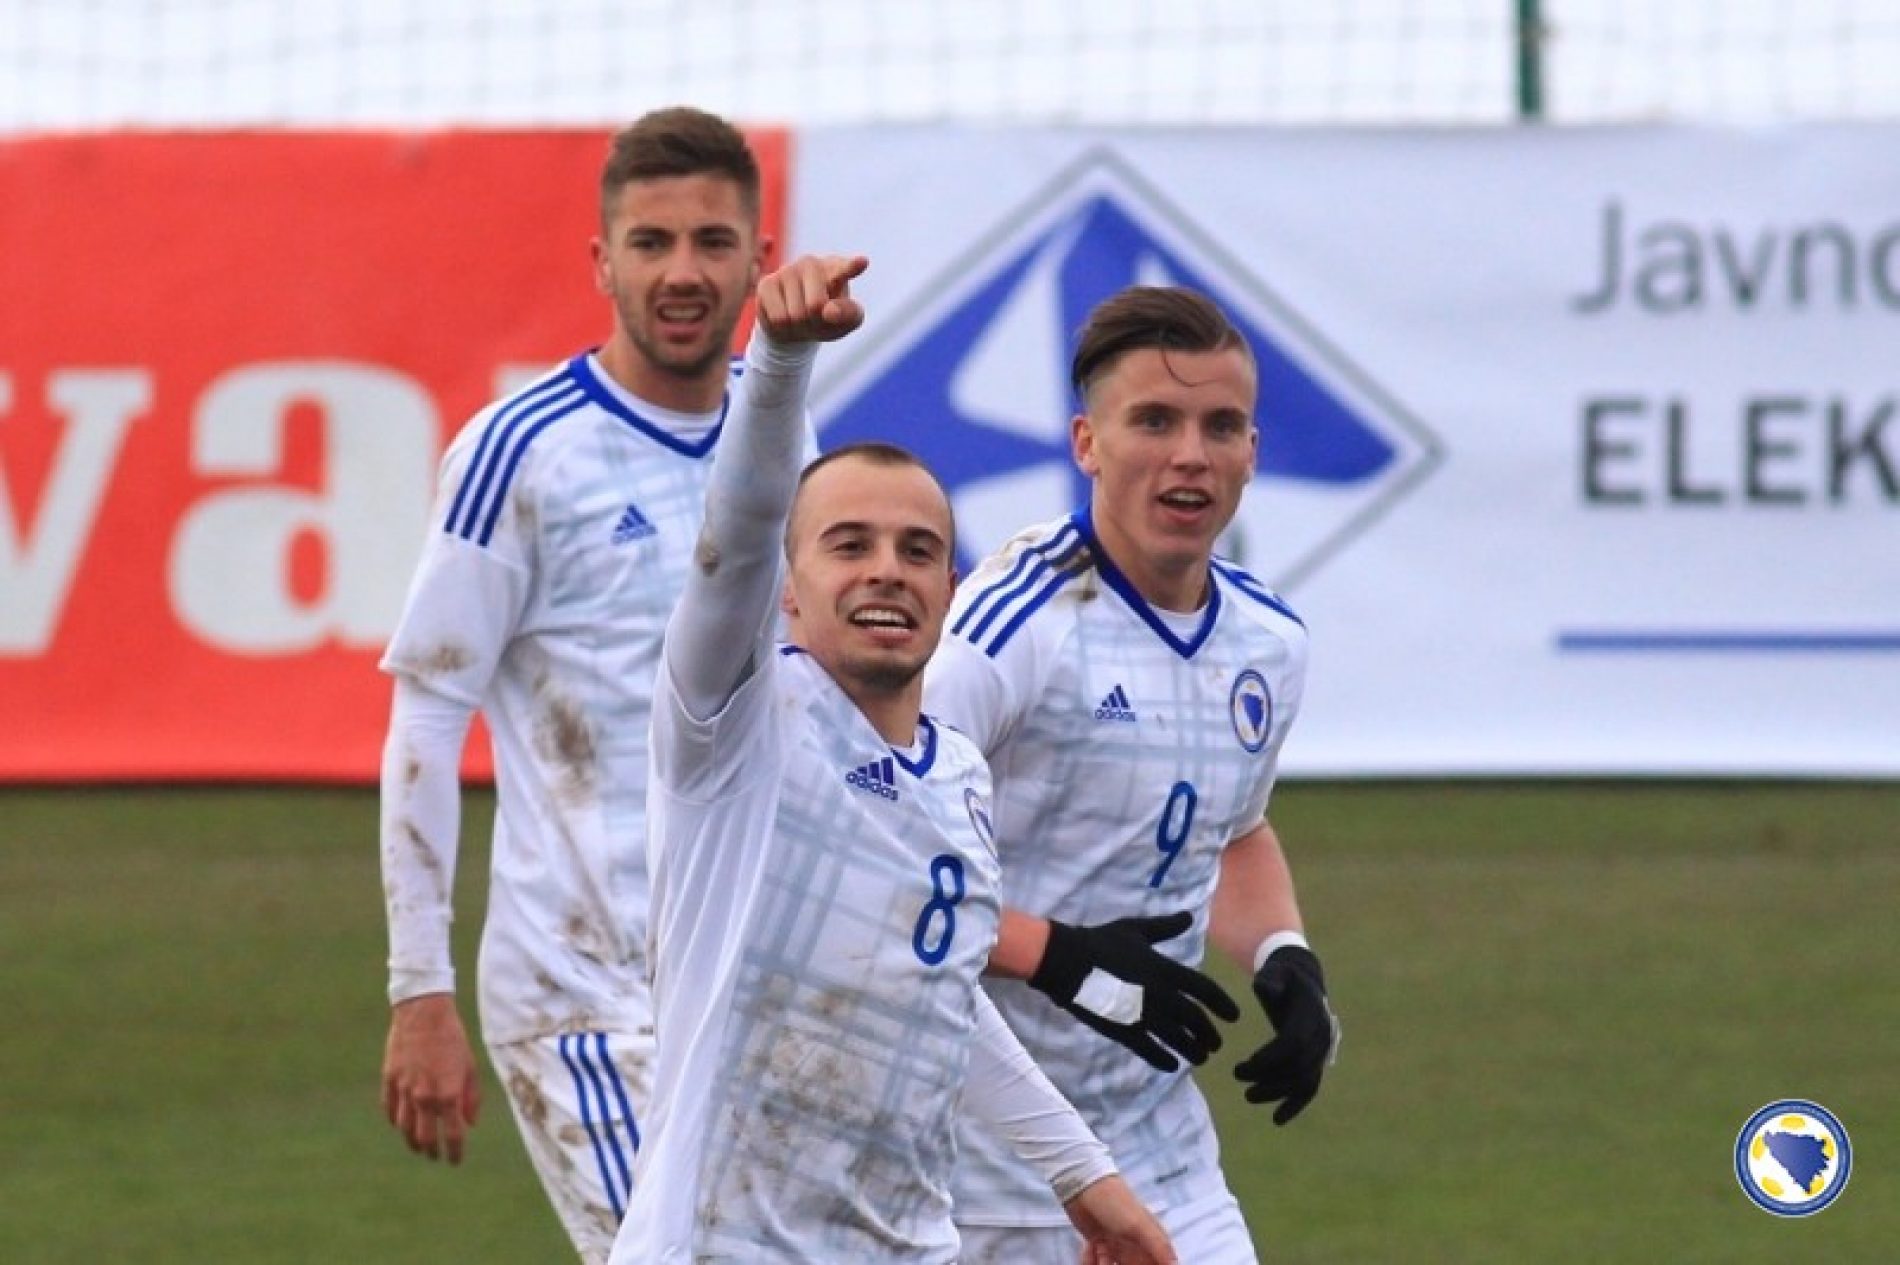 Pobjeda mlade reprezentacije Bosne i Hercegovine!